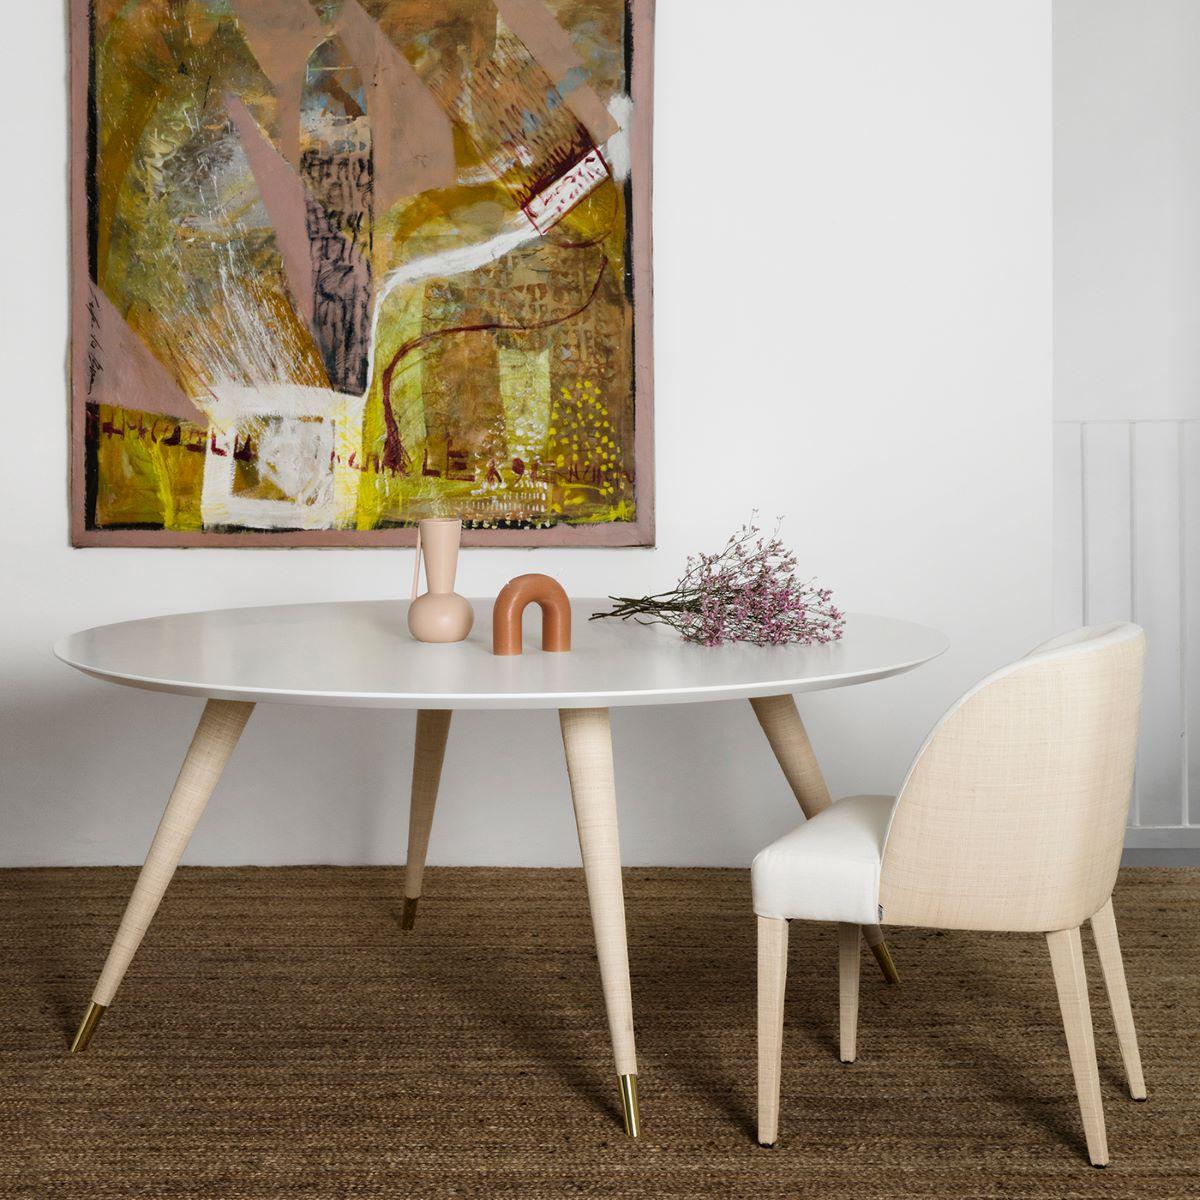 Dieser Esszimmerstuhl in schlichtem, klarem Design ist eine elegante Ergänzung zum Cupertino Esstisch. Er zeichnet sich durch eine unverwechselbare Polsterung aus, die weißen Stoff und Raffia kombiniert.